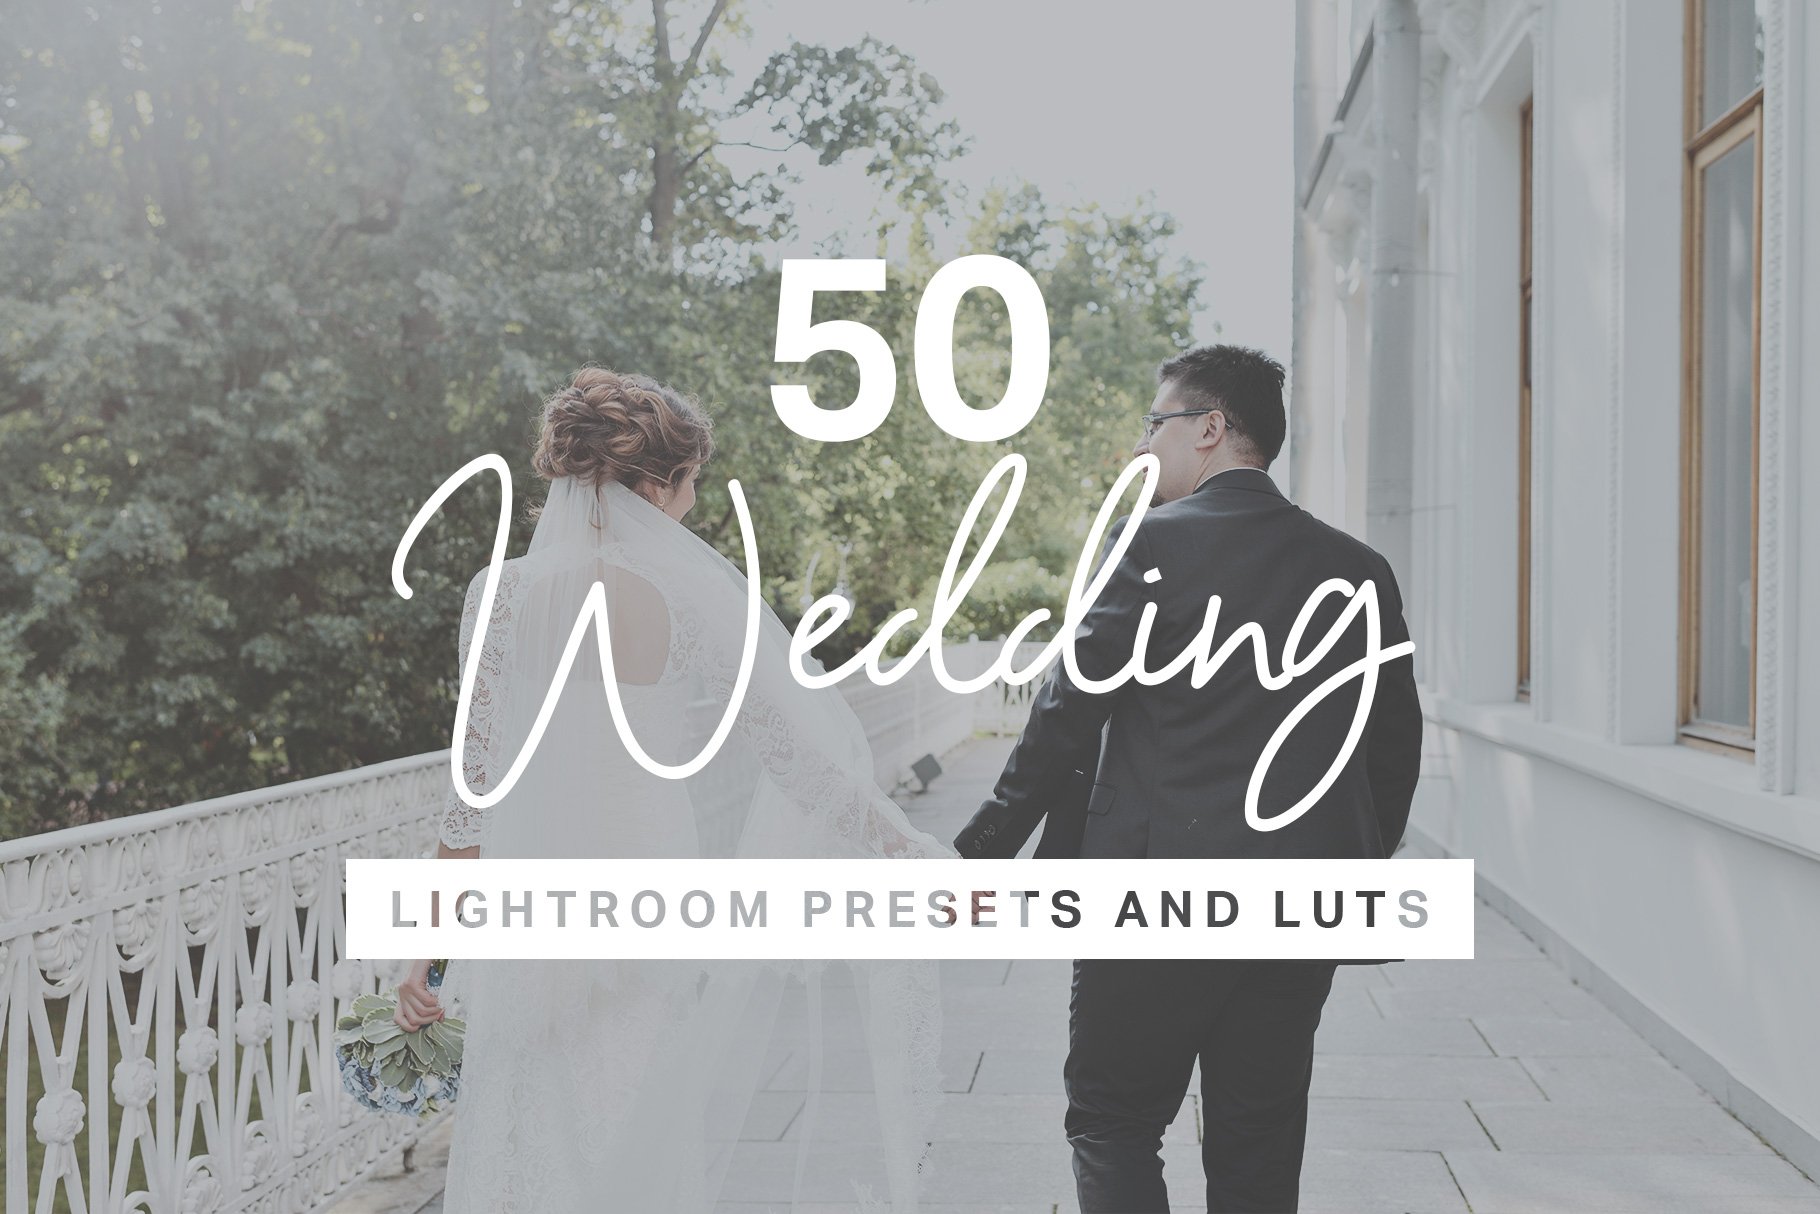 50 Wedding Lightroom Presets + LUTscover image.